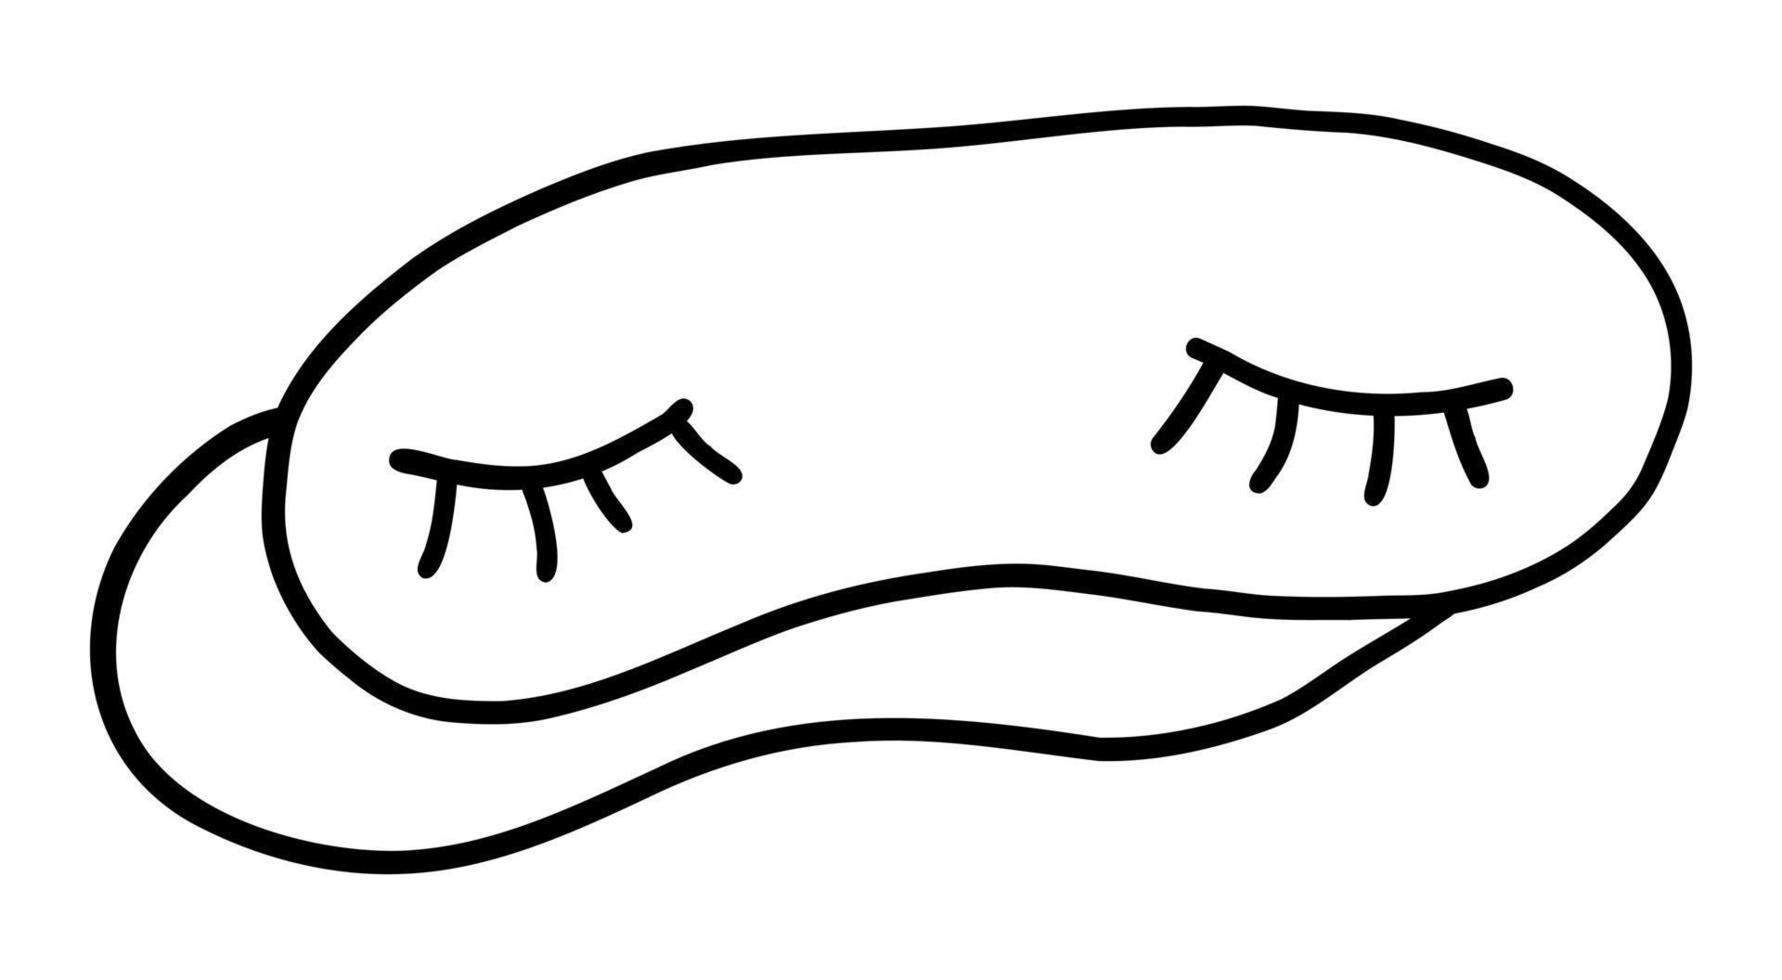 Vektor-Illustration eines Schlafverbandes isoliert auf weißem Hintergrund. Gekritzelzeichnung von Hand vektor